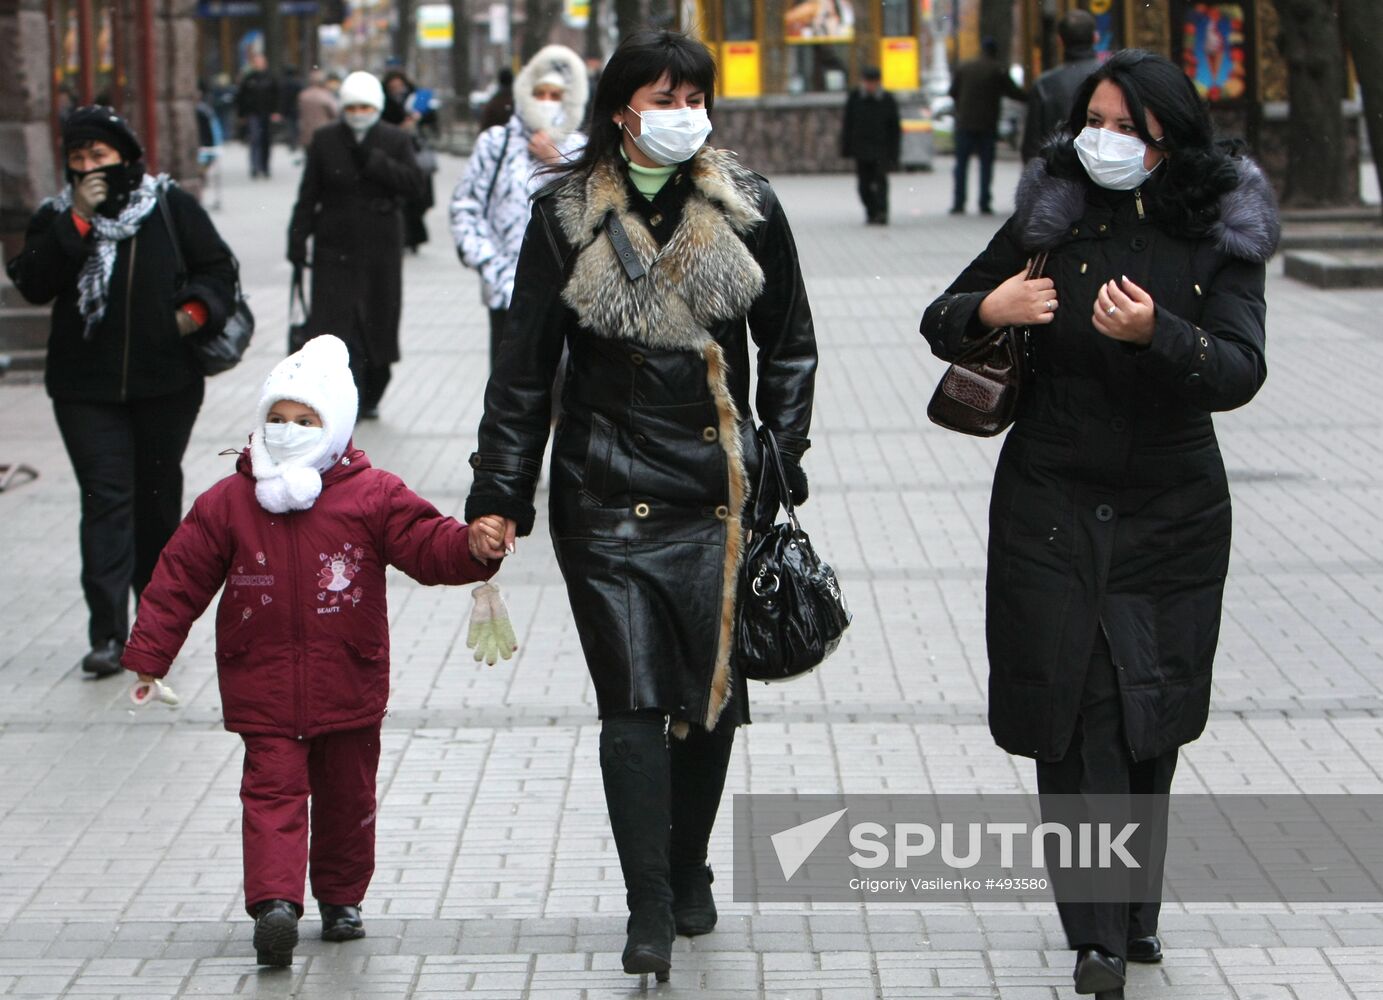 Kiev takes measures against swine flu